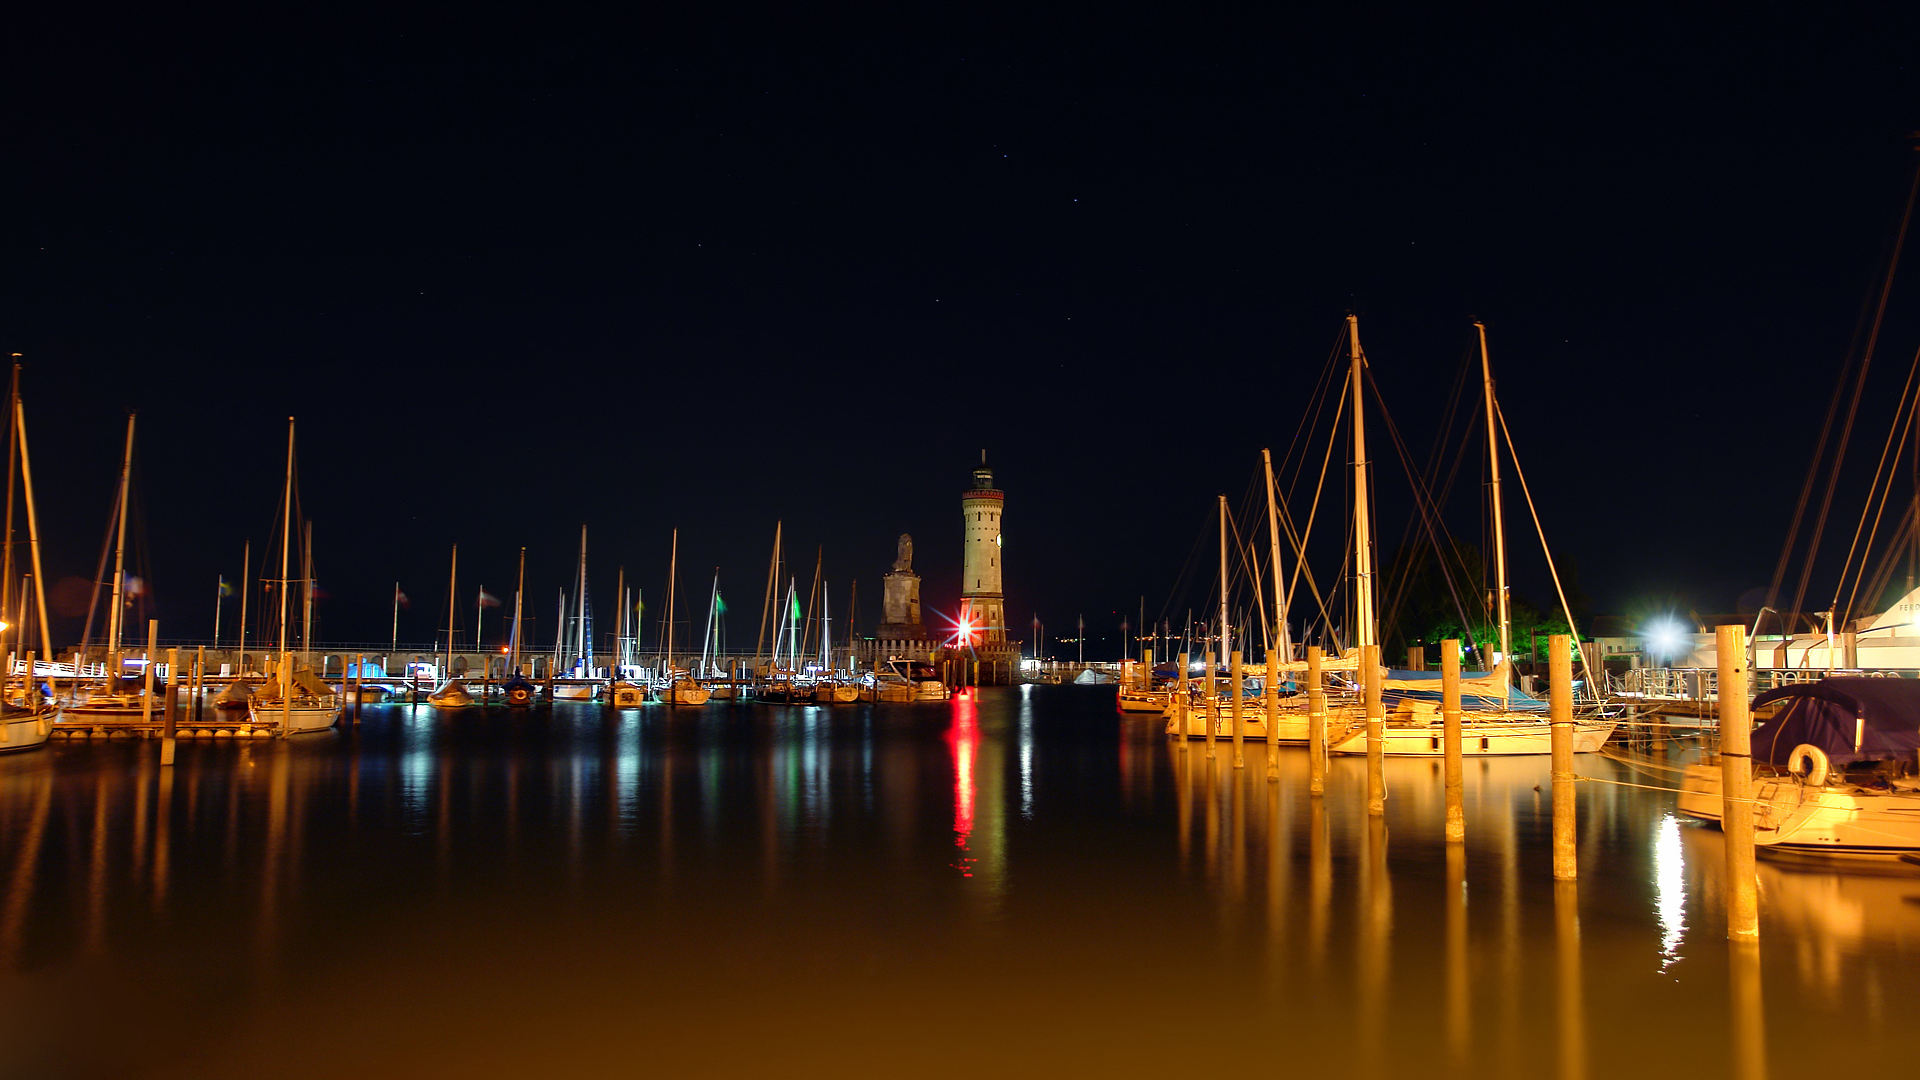 лодки, ночные города, фото, пейзажи, катера, вода